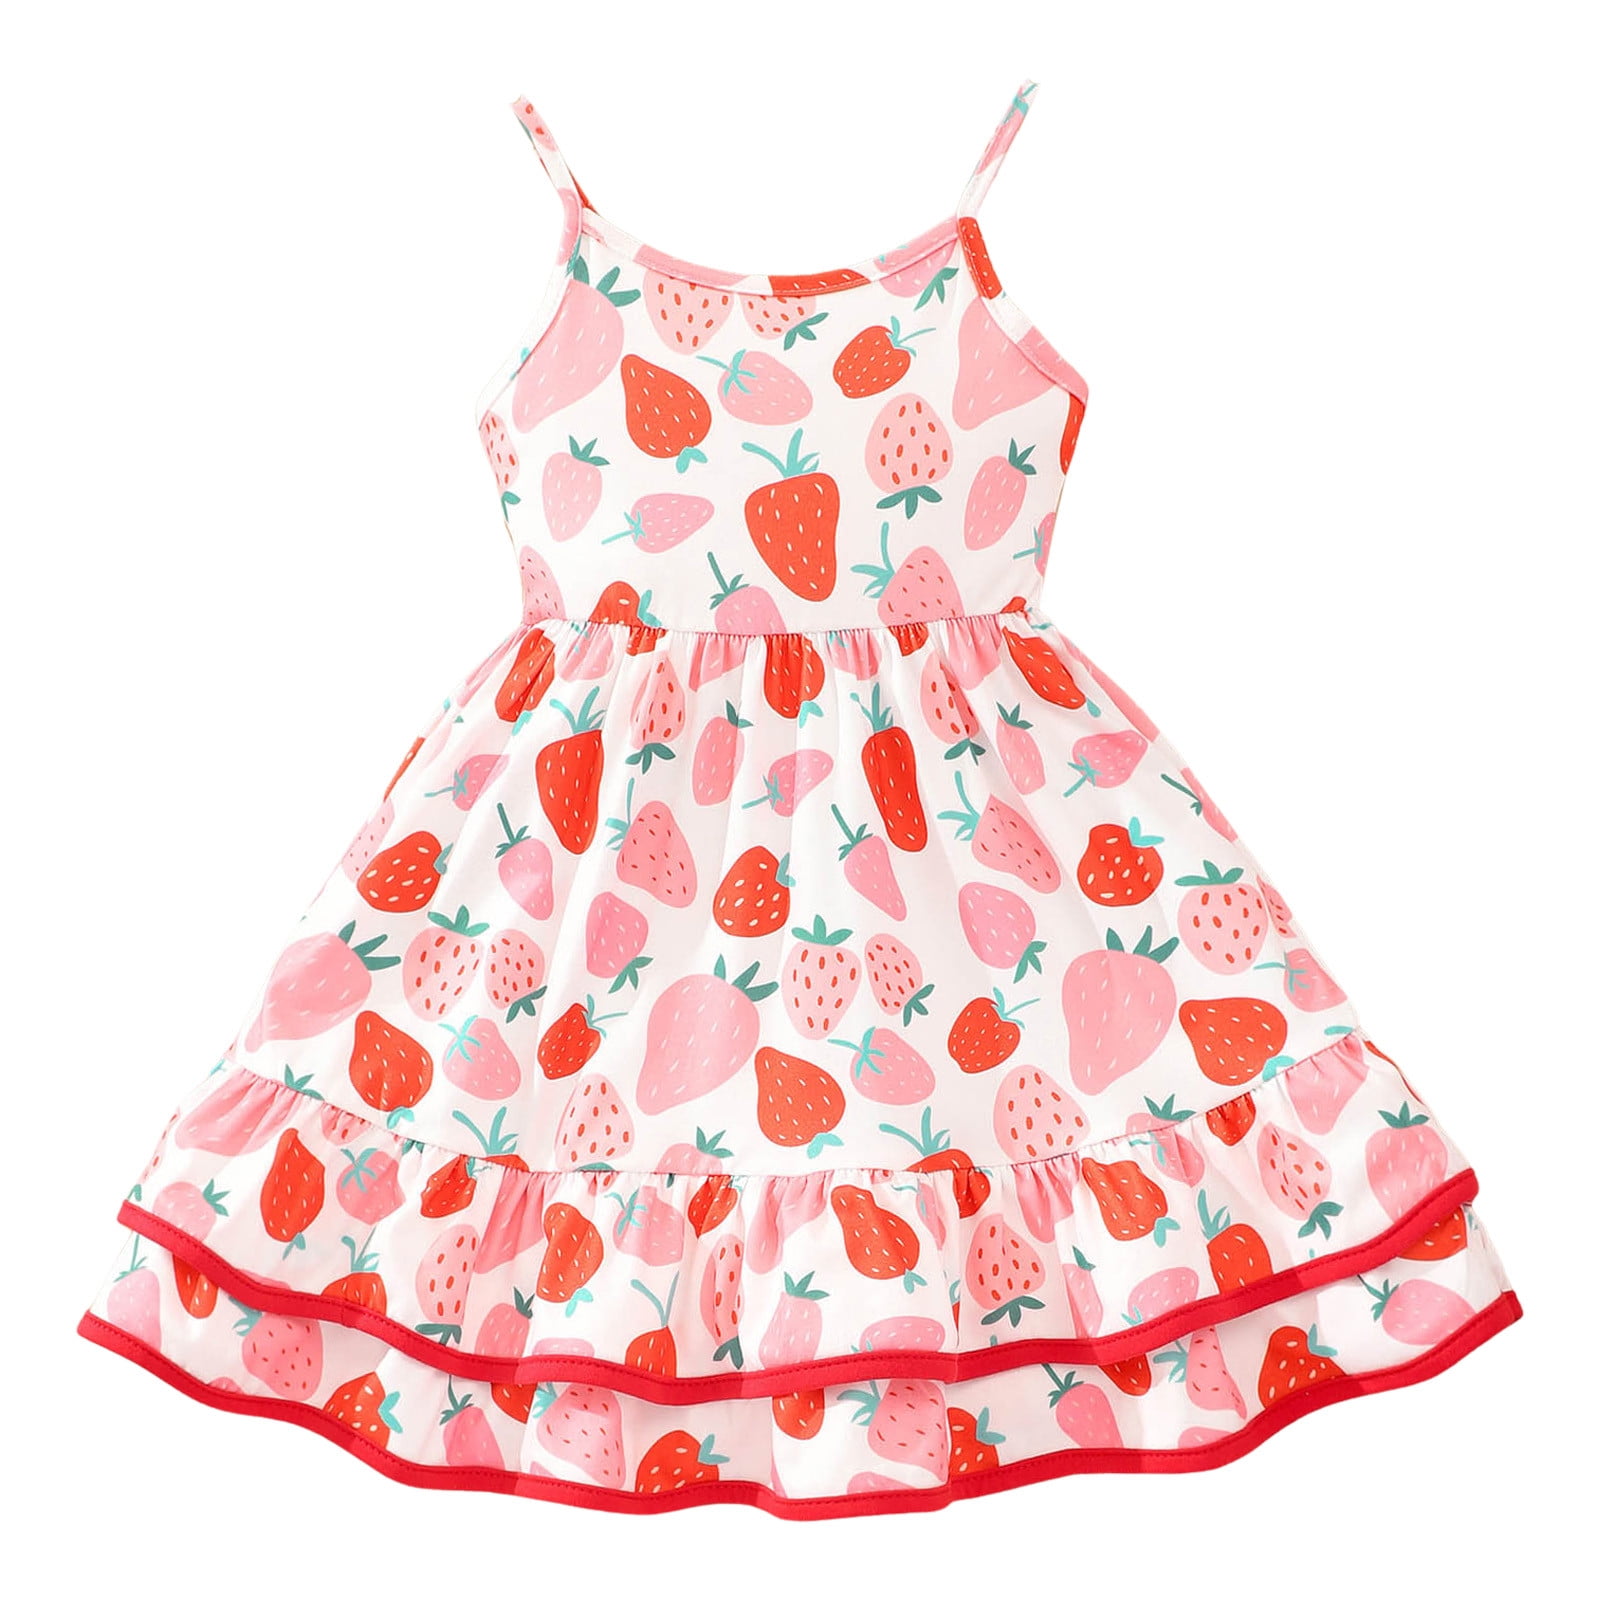 Dresses for Girls,Toddler Girls Summer Sleeveless Prints Dress Dance ...